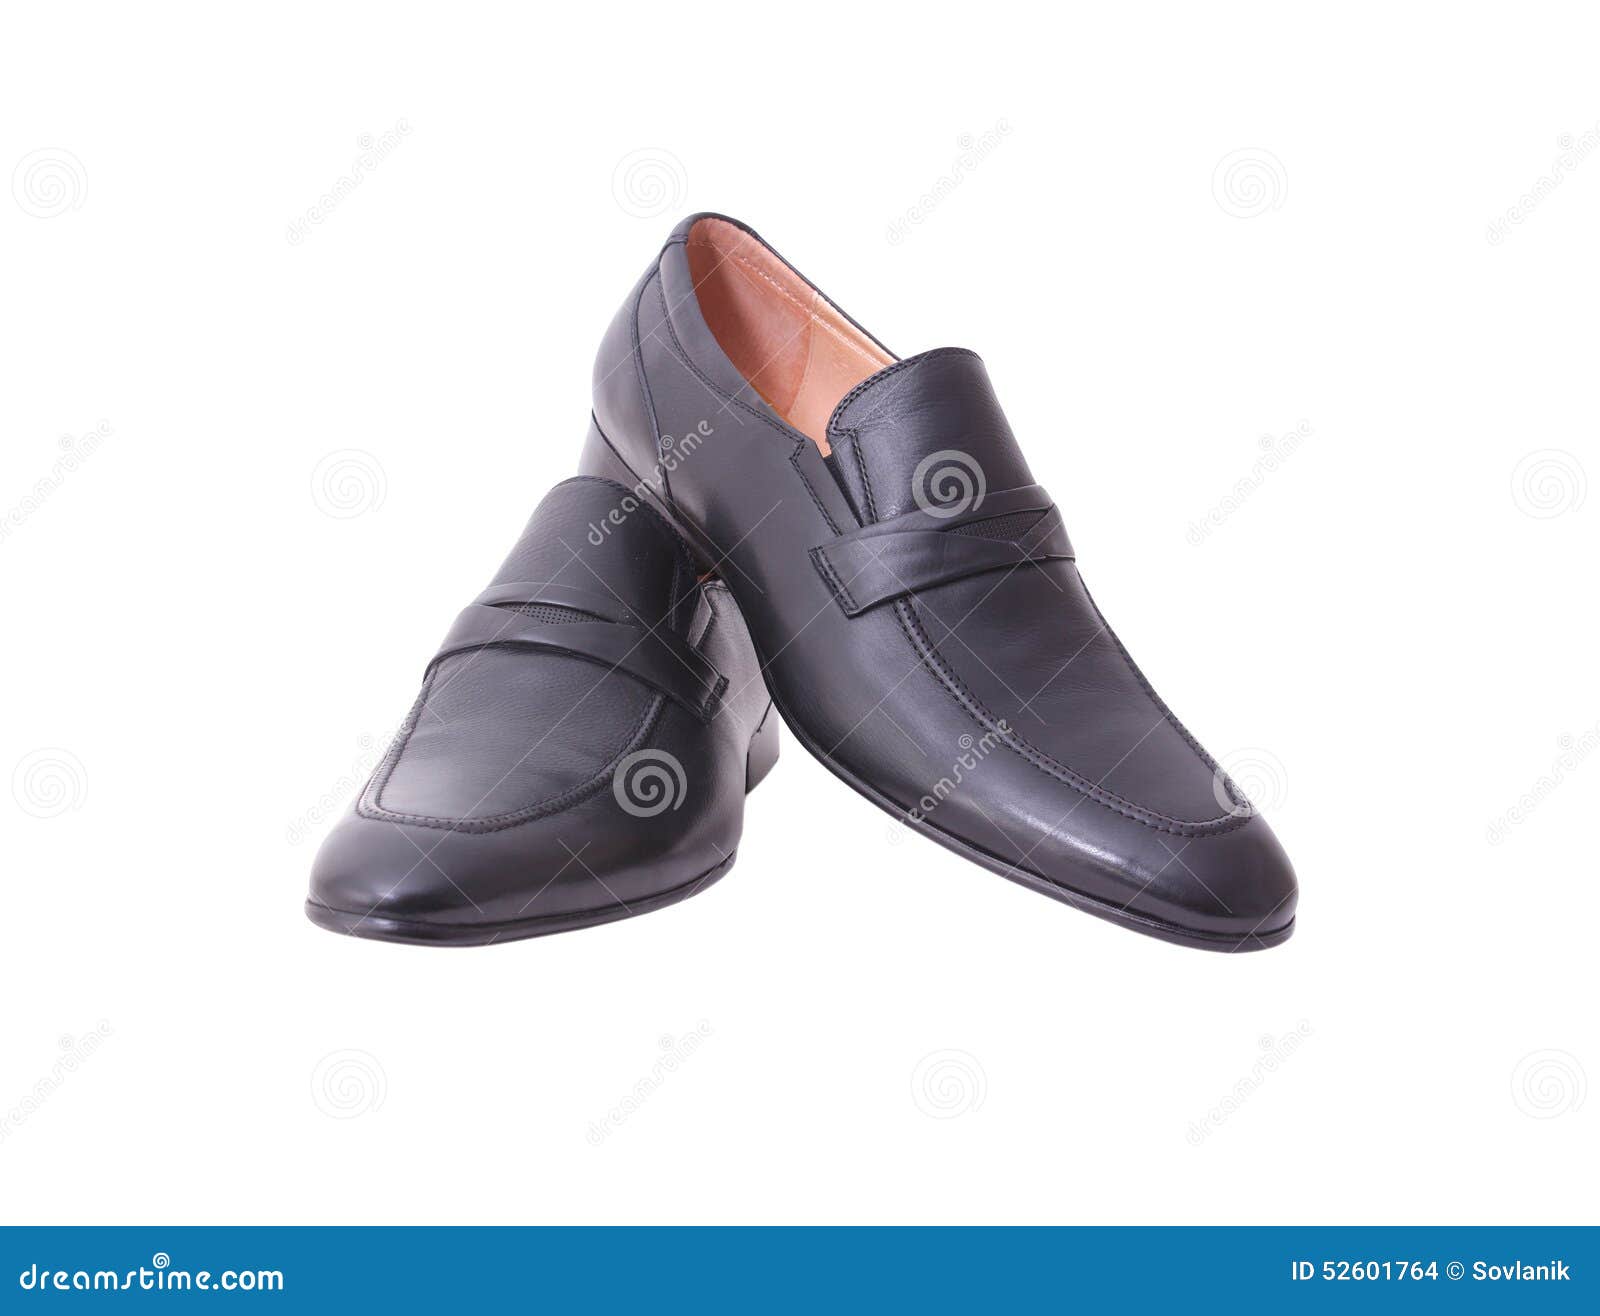 Zapatos Para Joven Foto de archivo - Imagen de elegancia, fondo: 52601764